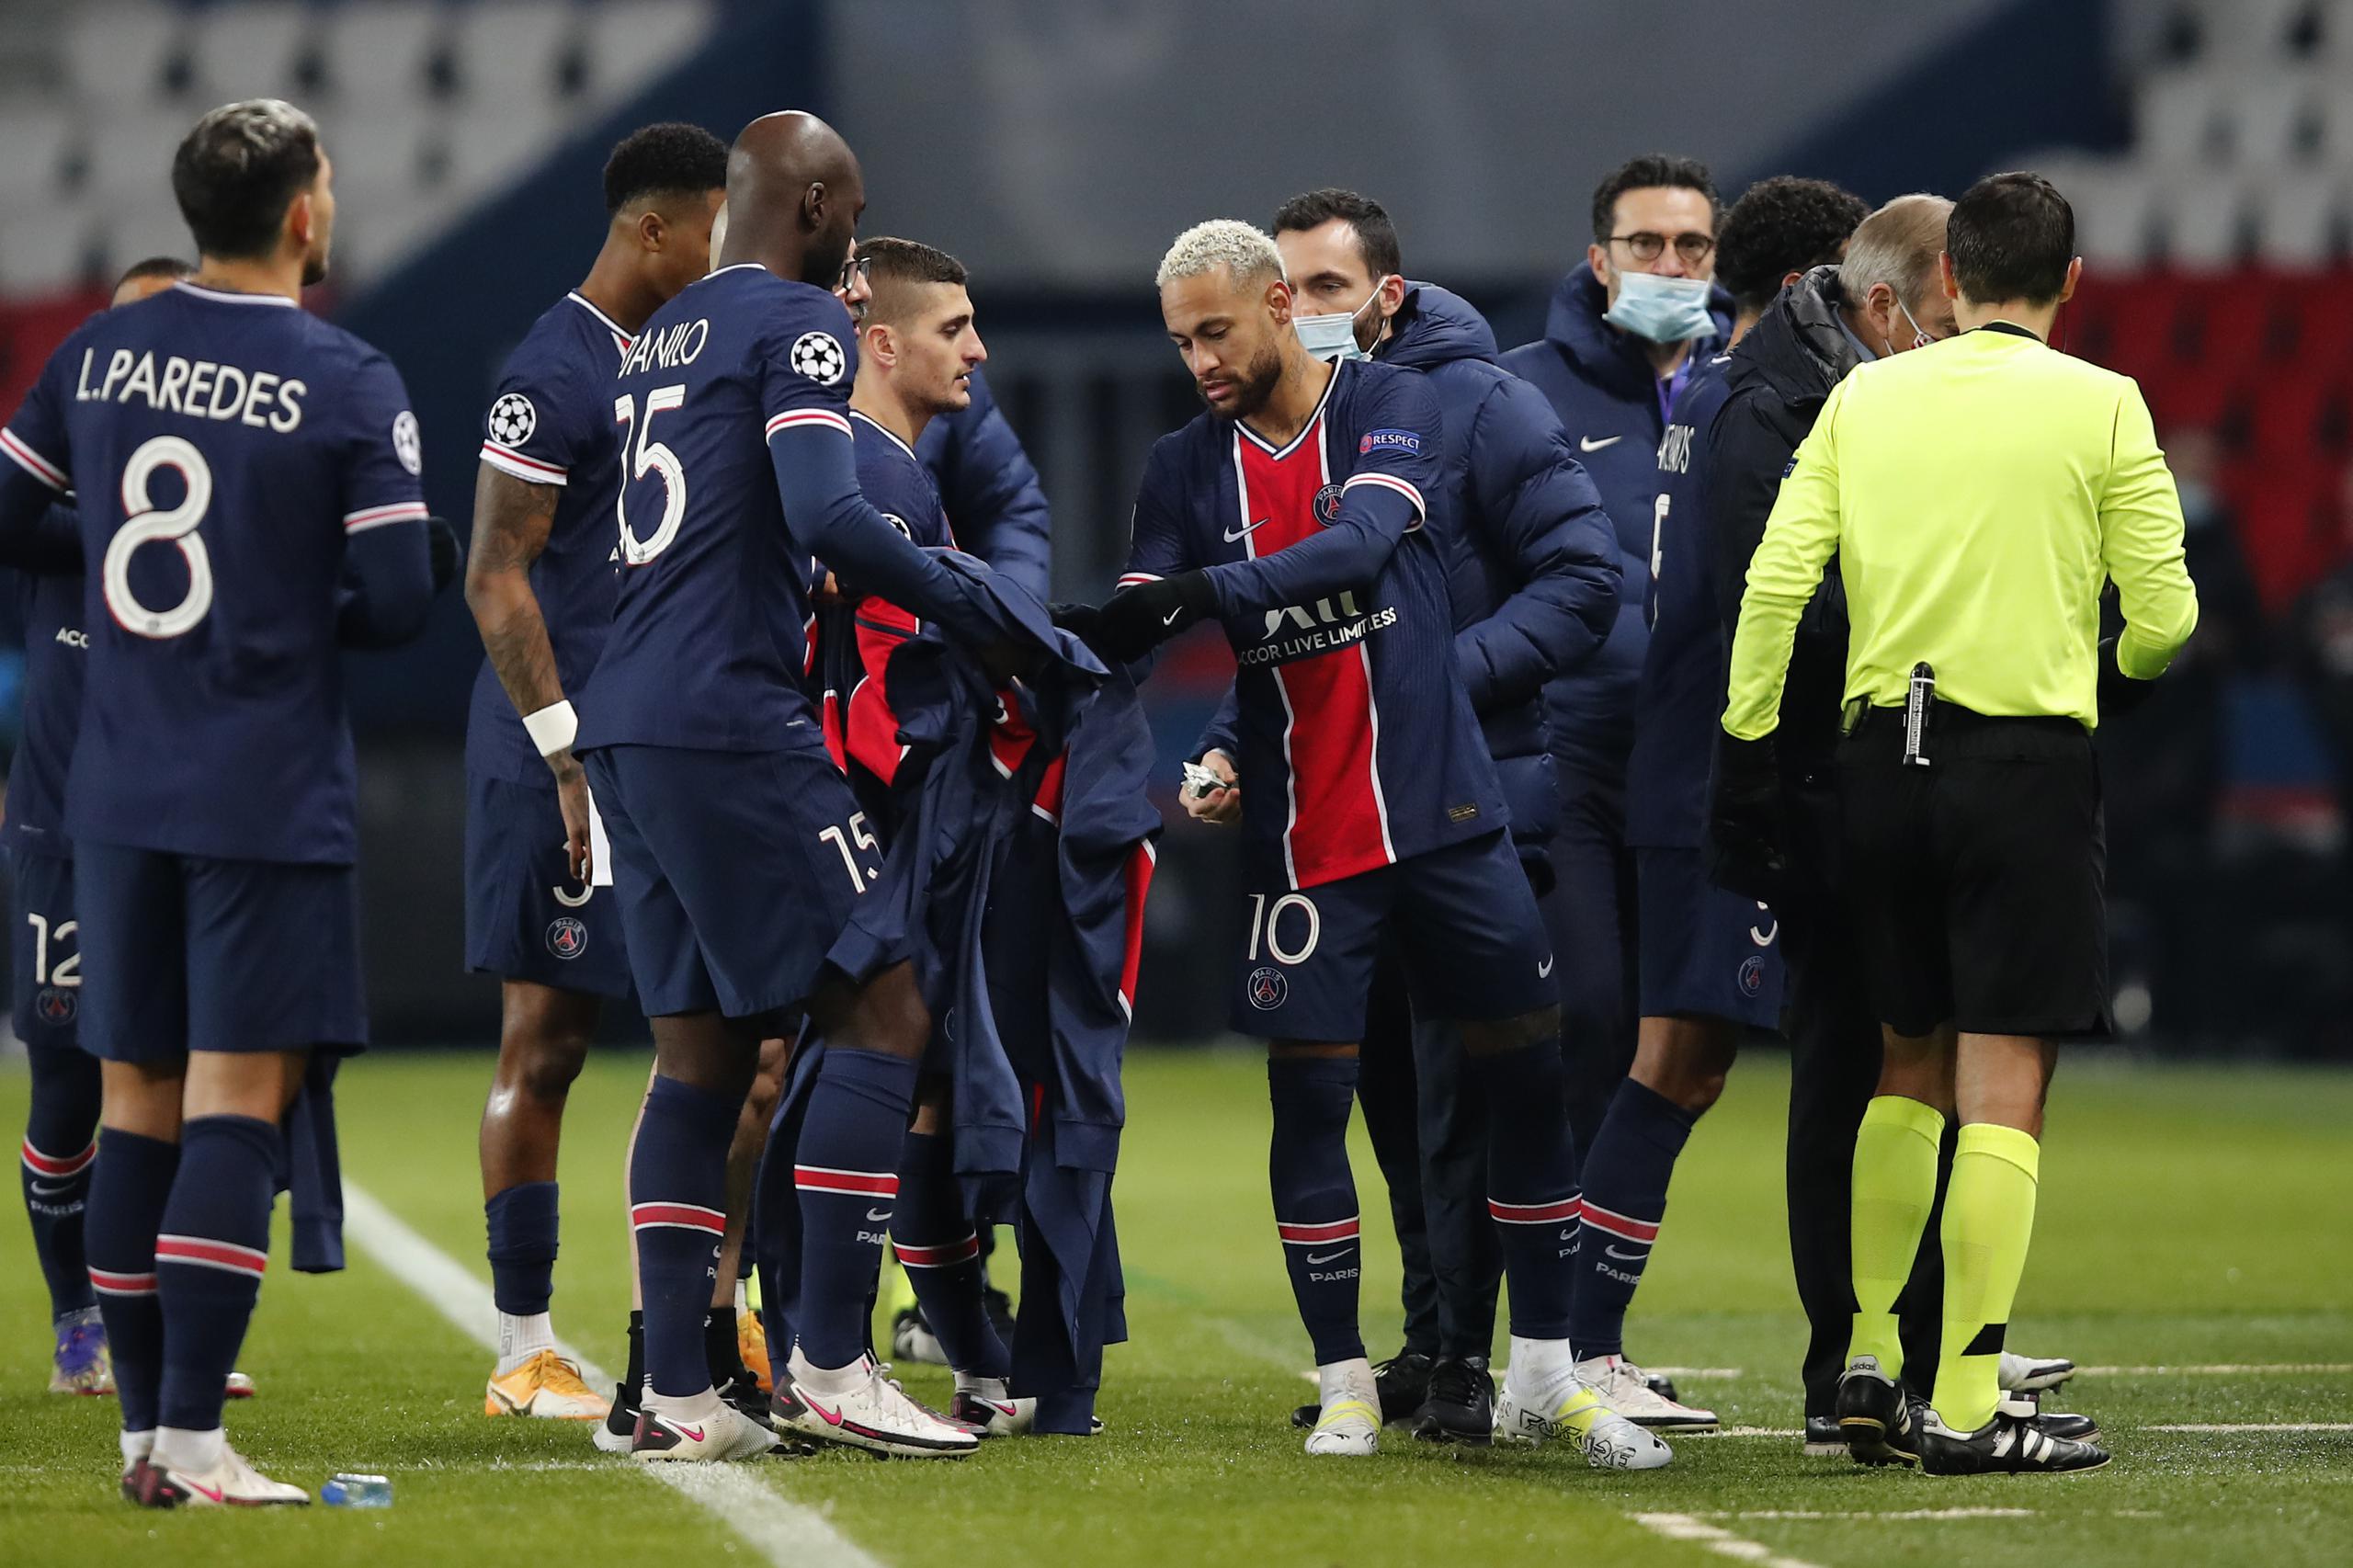 Jugadores de ambos equipos, el Paris Saint Germain y el Basaksehir de Istambul, abandonaban el terreno del estadio Parc des Princes en París, donde se celebrara el partido correspondiente al grupo H de la Champions League.